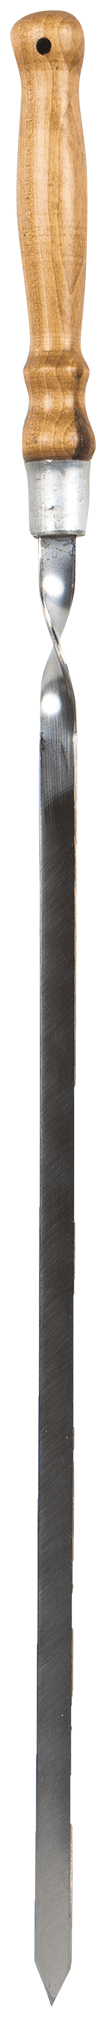 Шампур металлический Firewood плоский, с деревянной ручкой